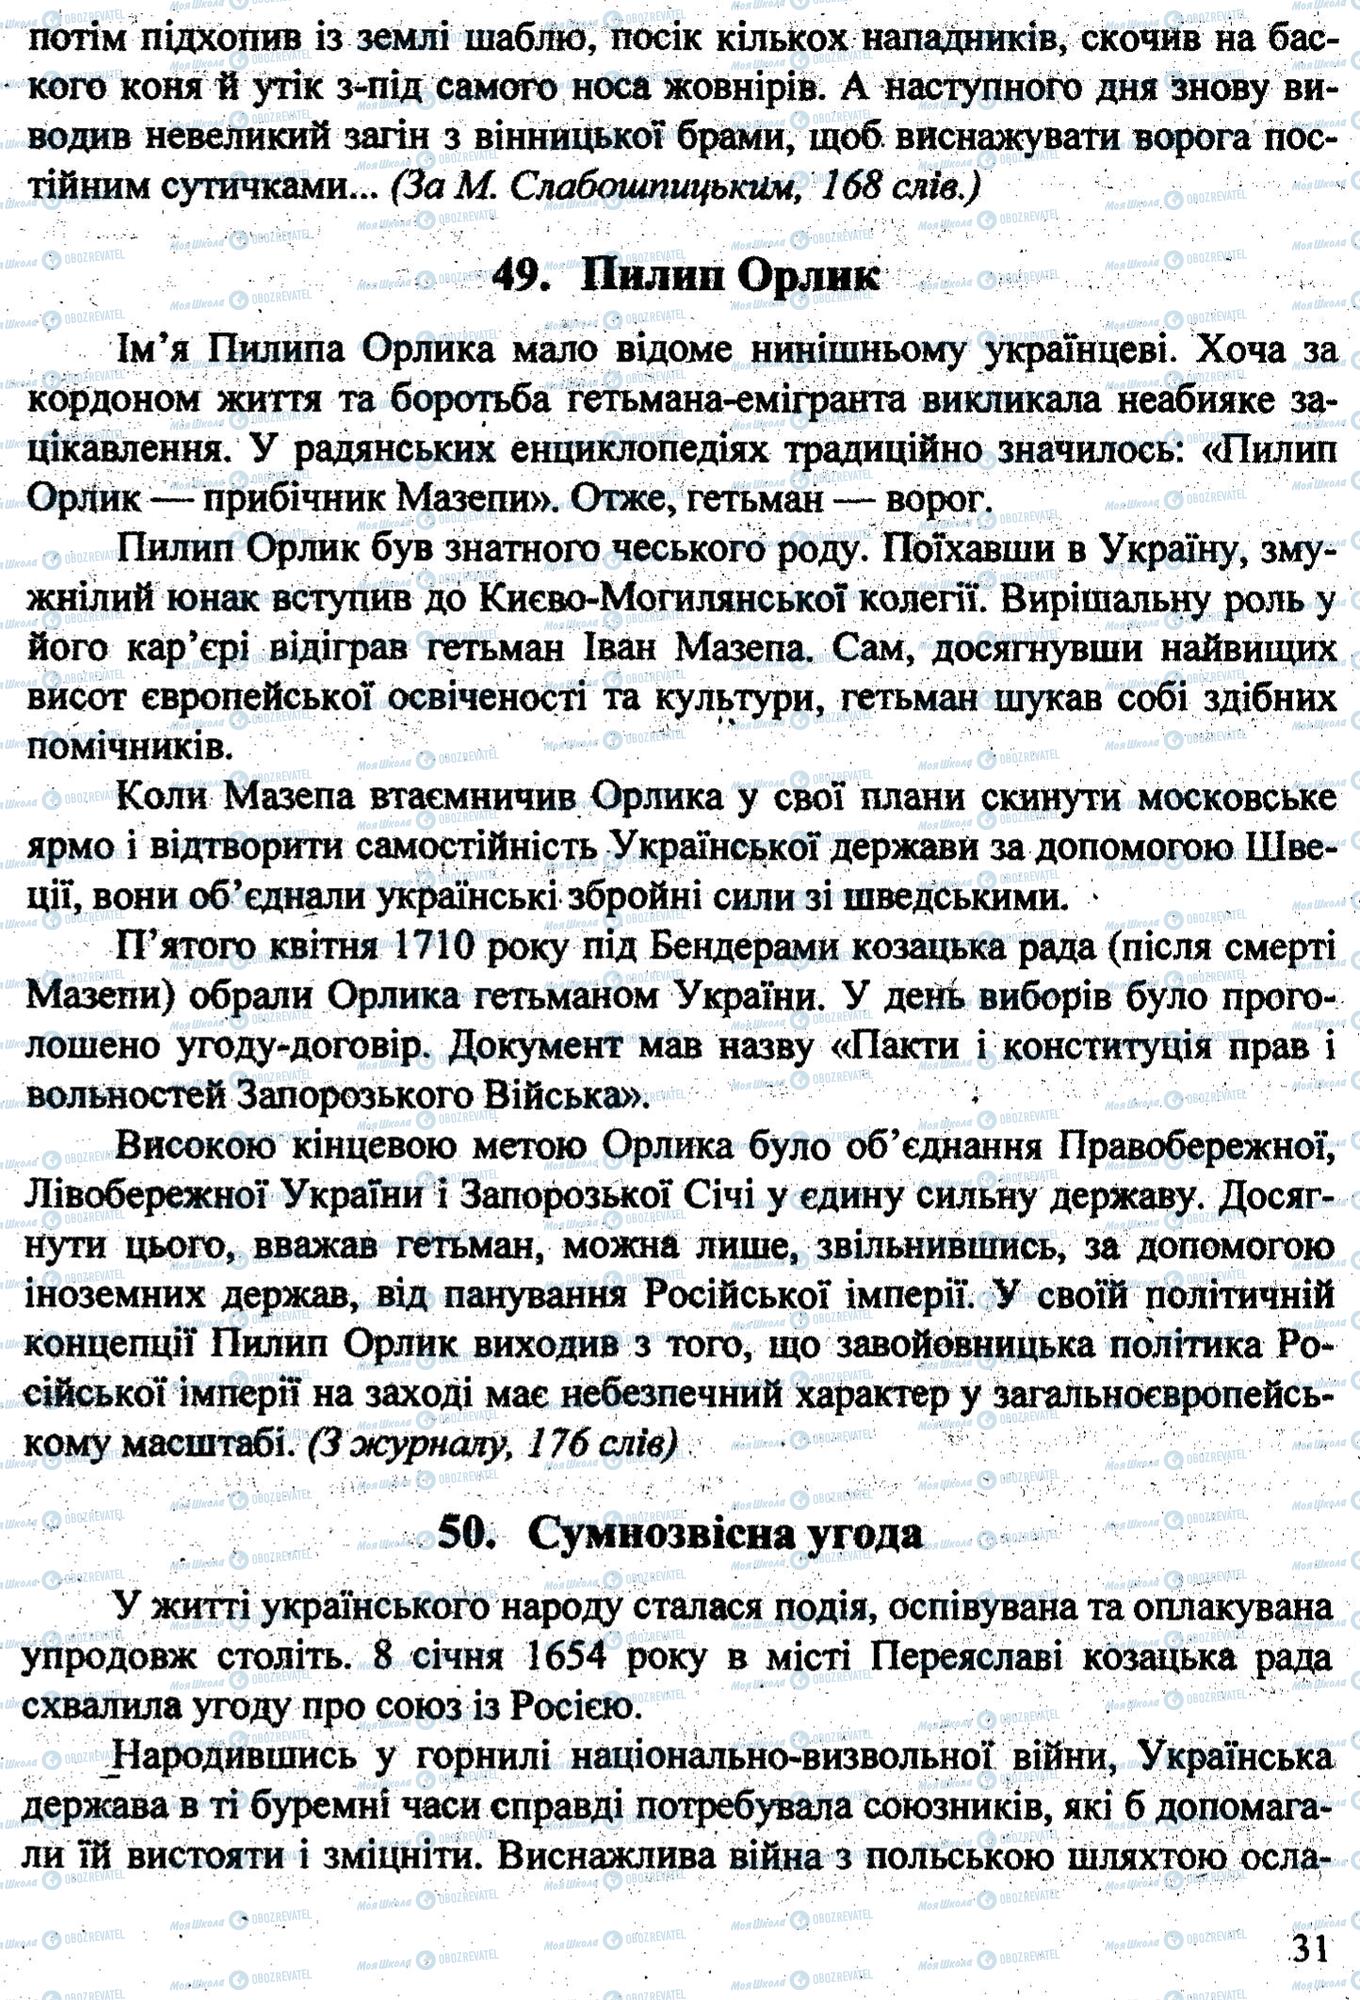 ДПА Укр мова 9 класс страница 0030